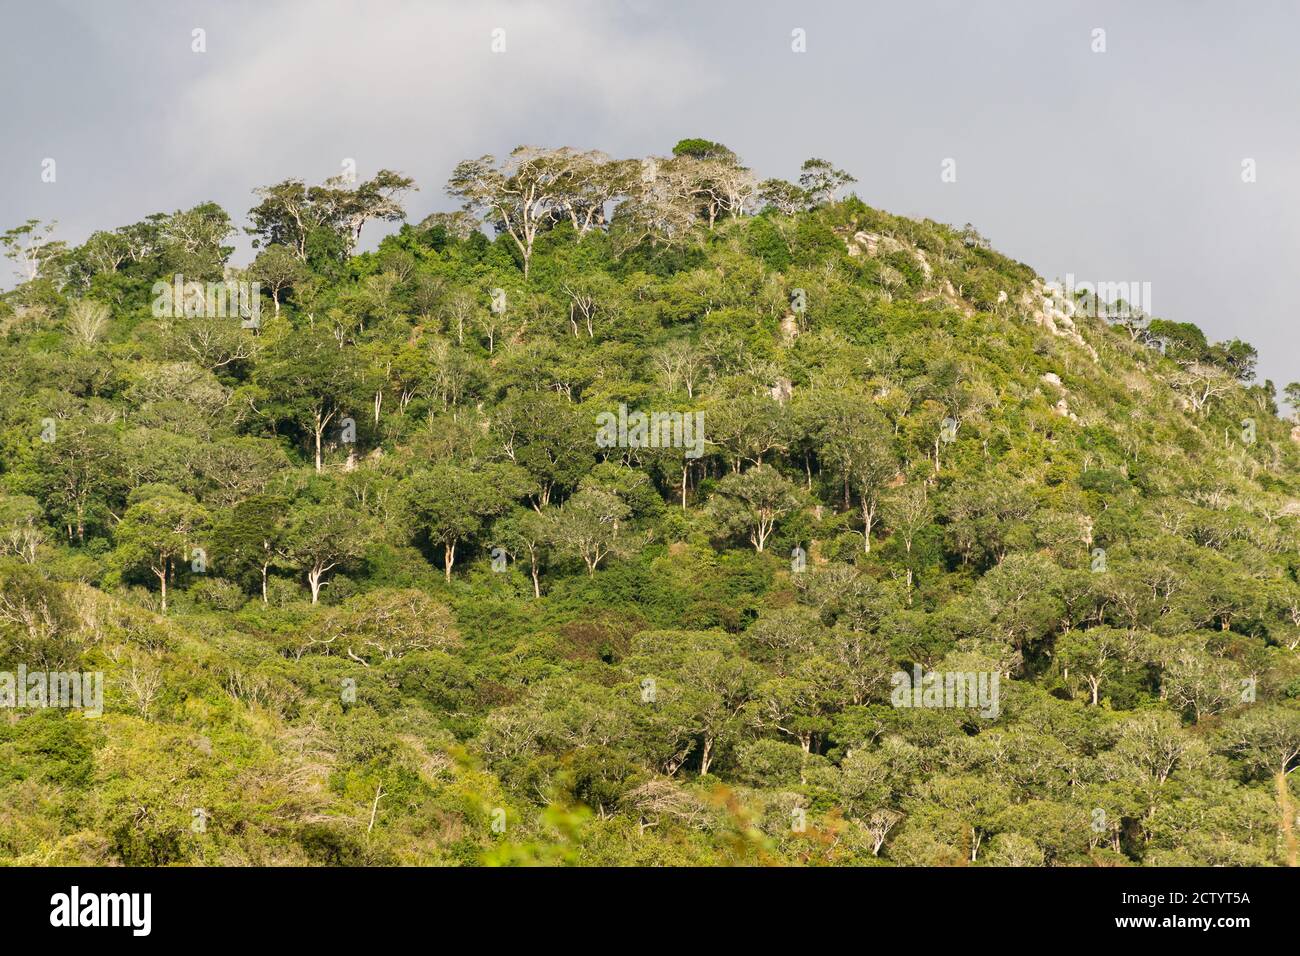 Una sezione della Riserva Nazionale di Shimba Hills, che mostra gli alberi su una grande collina, Kenya, Africa Orientale Foto Stock